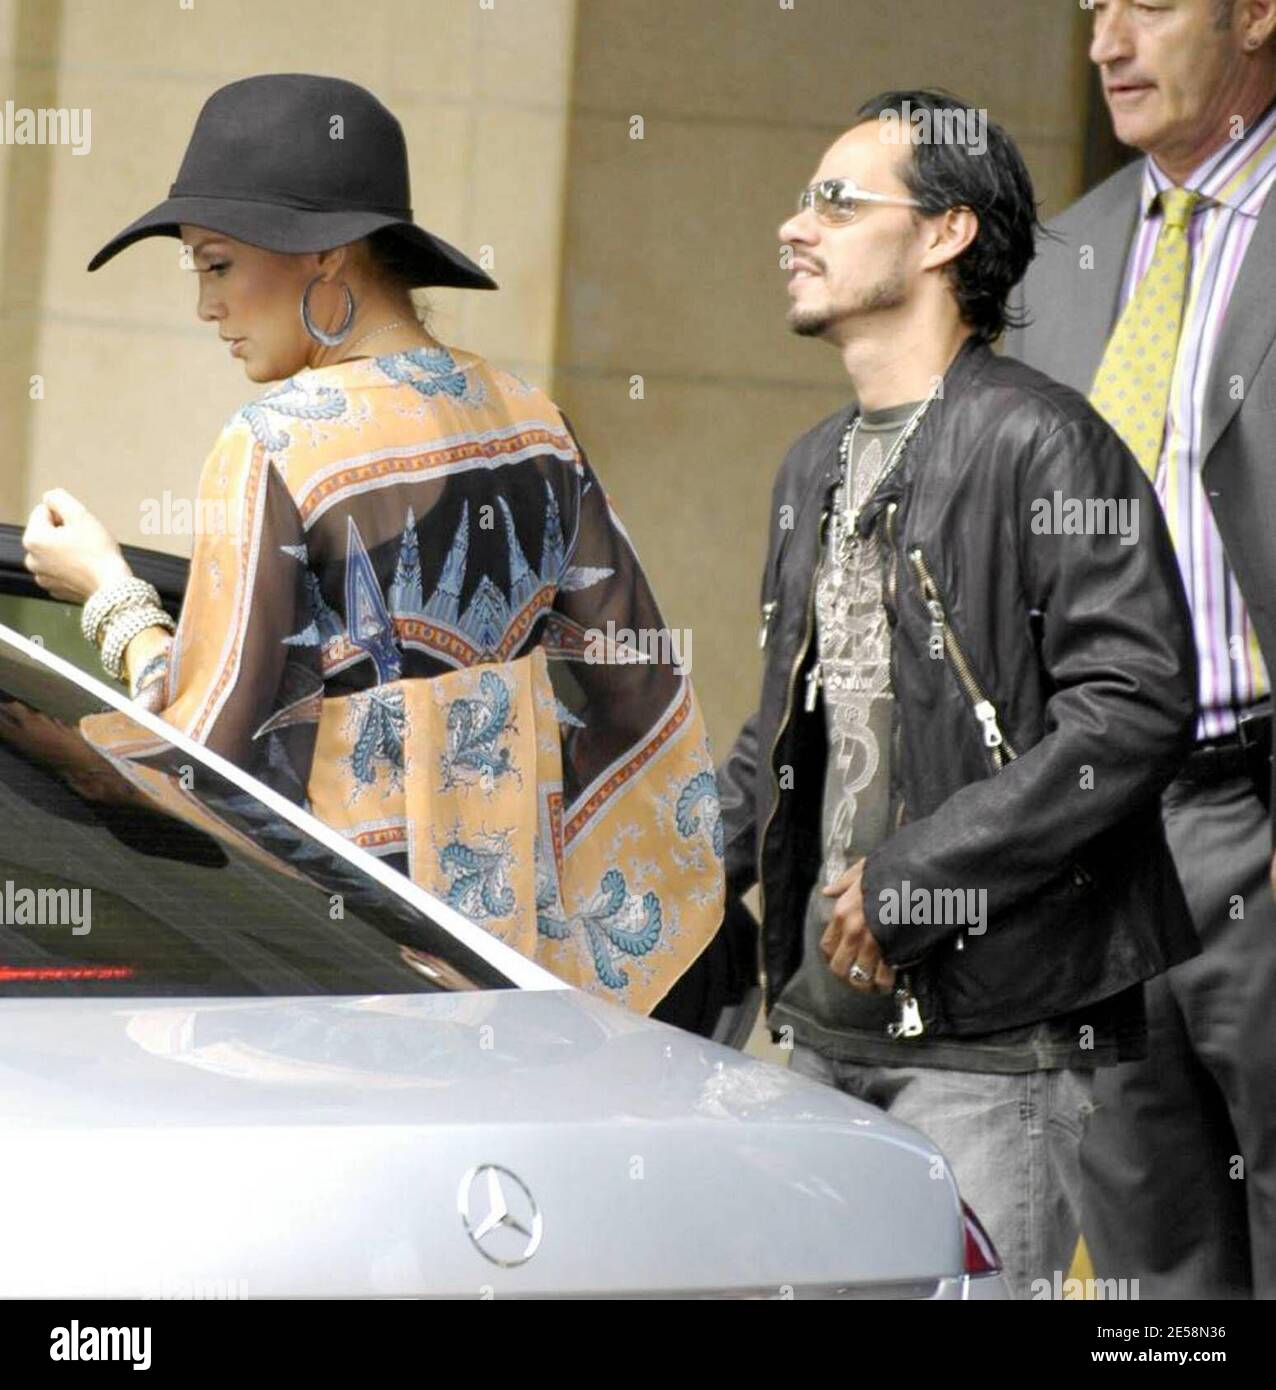 Con i rumors di gravidanza che volano, la superstar Jennifer Lopez lascia  il suo hotel di Londra sulla sua strada a radio uno con Marc Anthony di  hubby. Lopez aveva una borsa